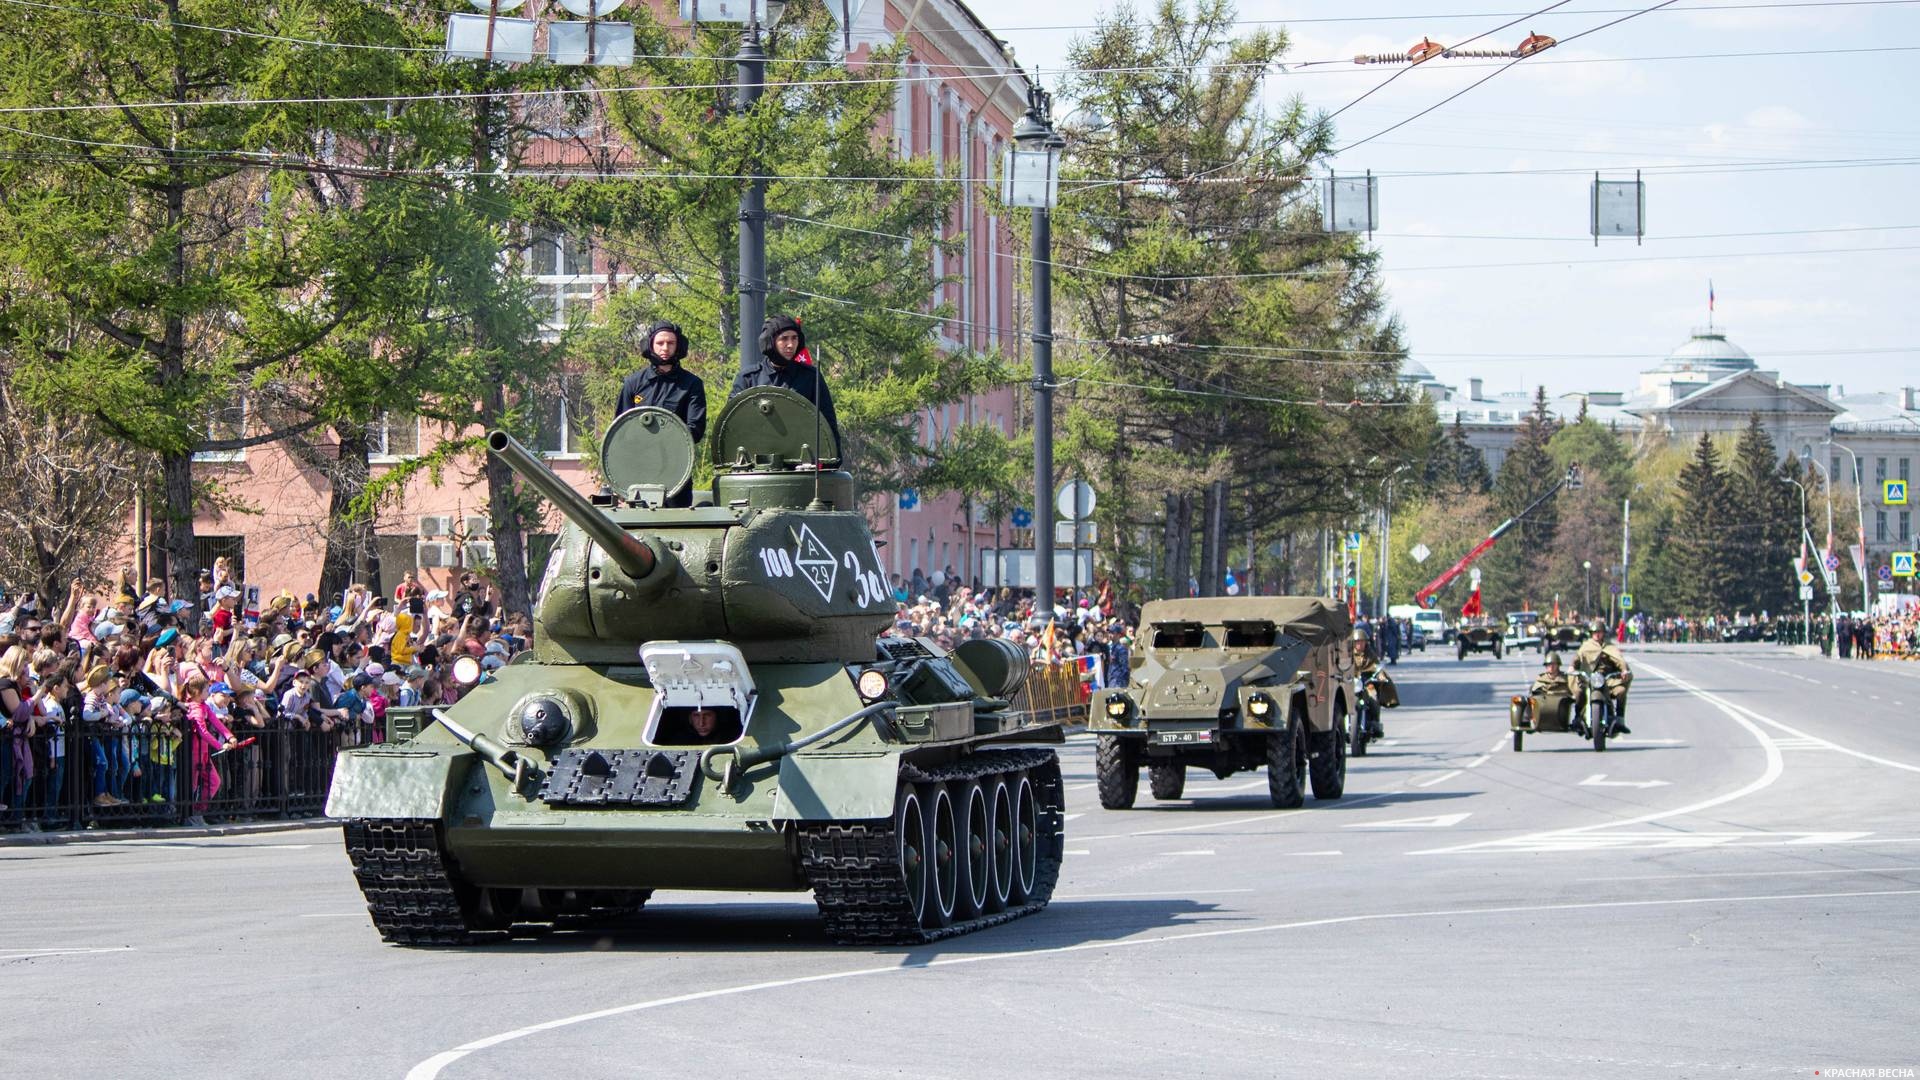 Проход военной техники. Впереди колонны танк Т-34 с копией Знамени Победы